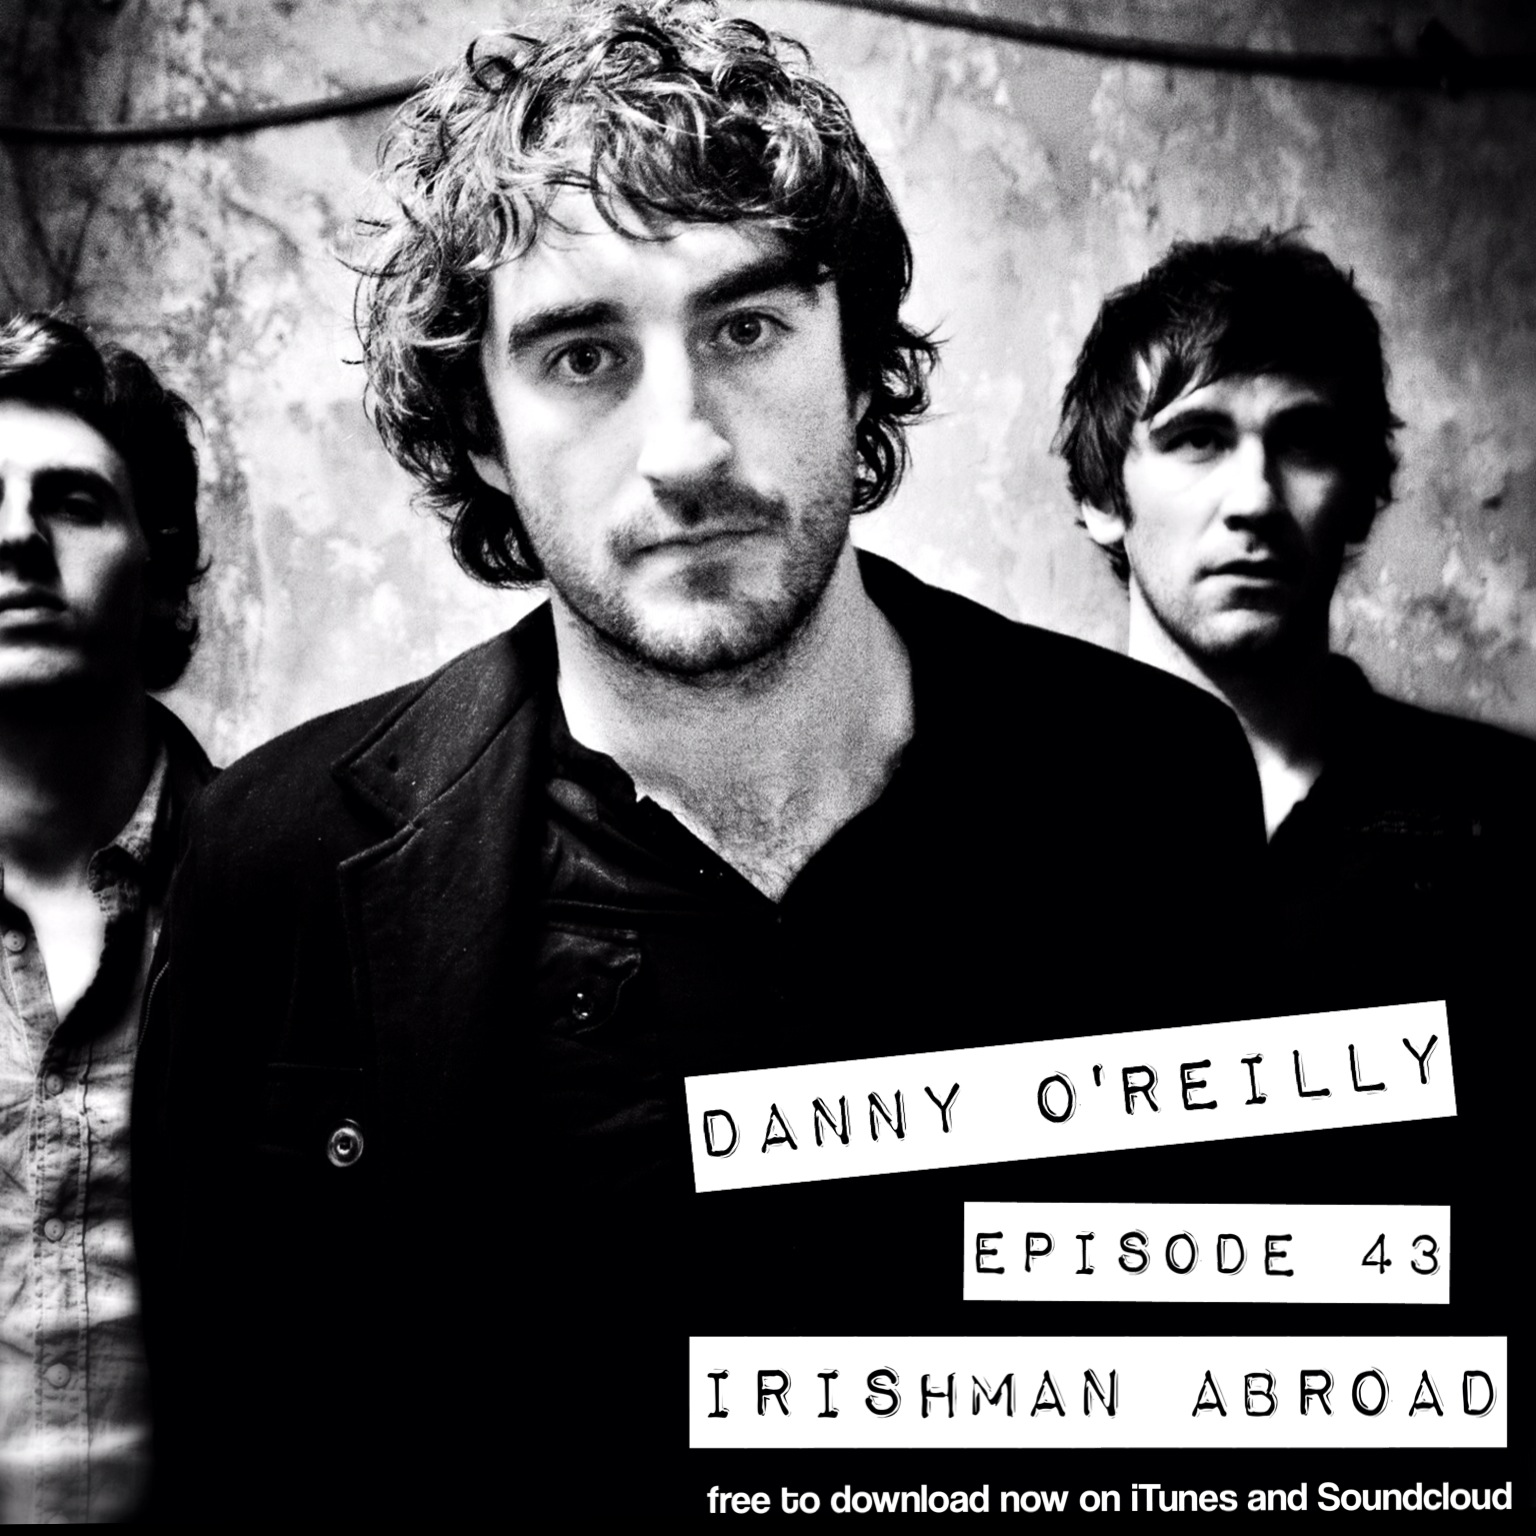 Danny O'Reilly: Episode 43